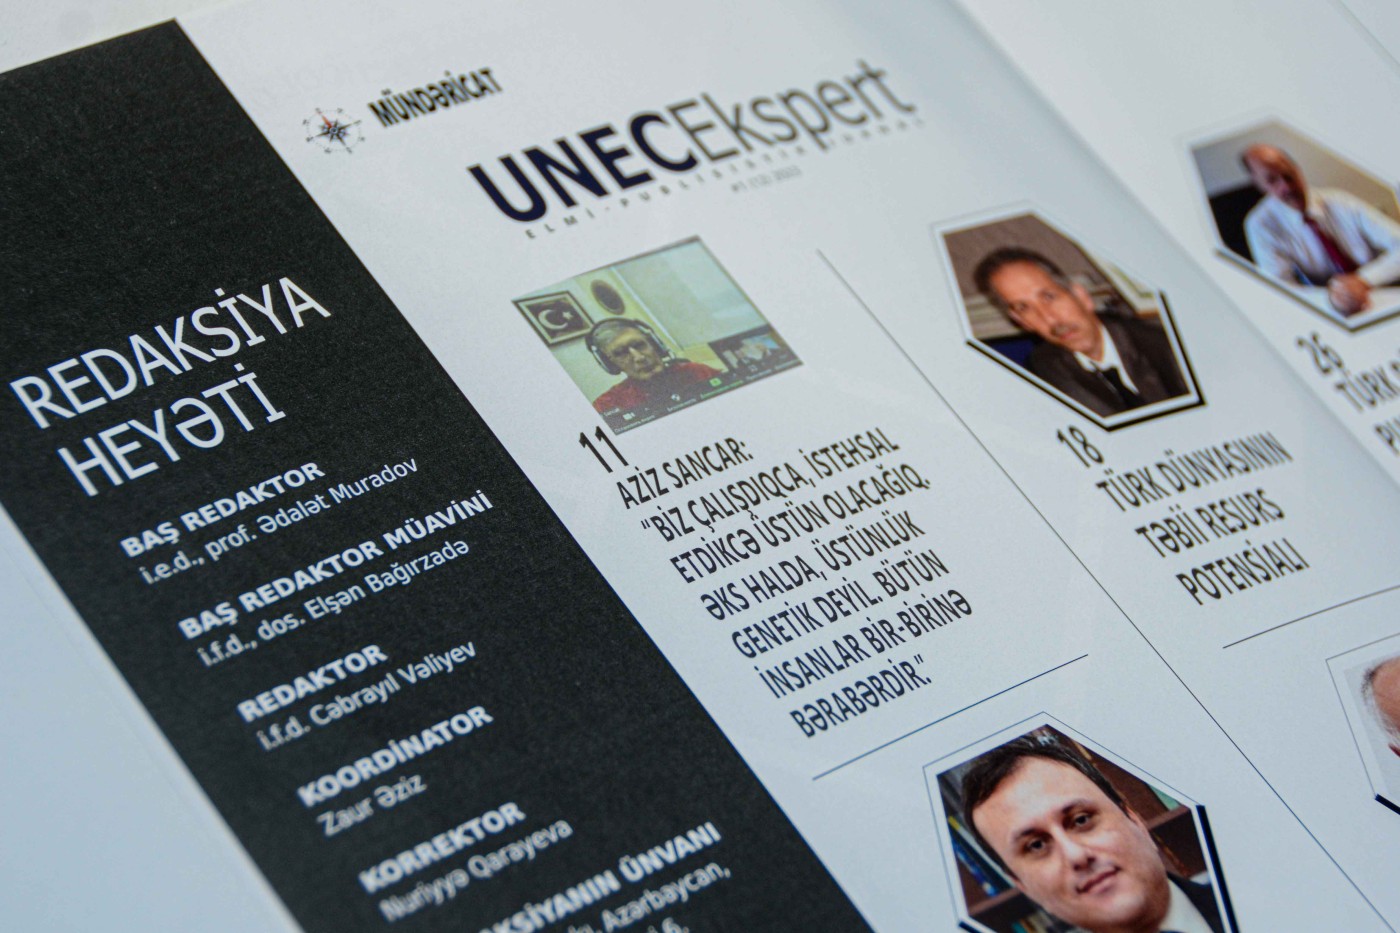 “UNEC Ekspert” jurnalının yeni sayı: Türk Dünyası dövlətlərinin iqtisadi potensialı (FOTOLAR)